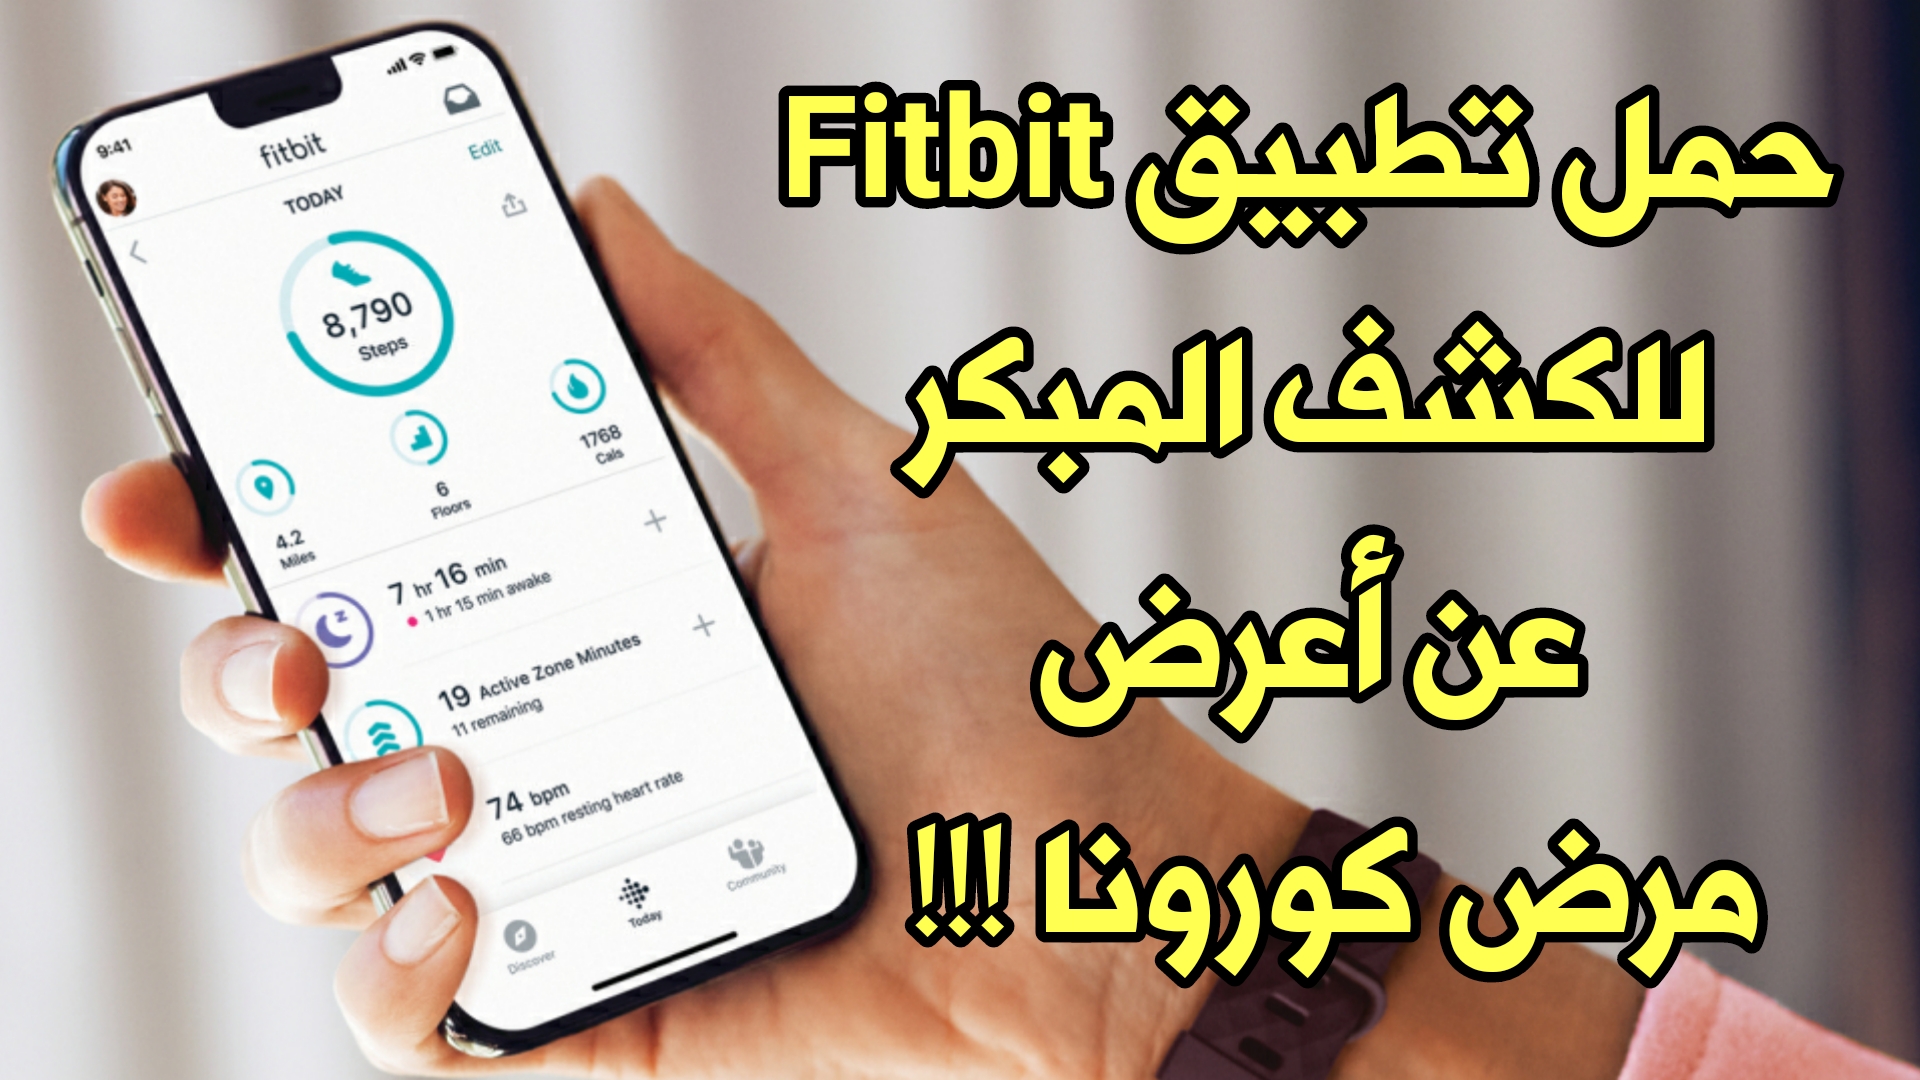 تعرف على تطبيق Fitbit COVID-19 للكشف المبكر عن أعرض مرض كورونا !!! سارع وحمل التطبيق من شركة Fitbit !